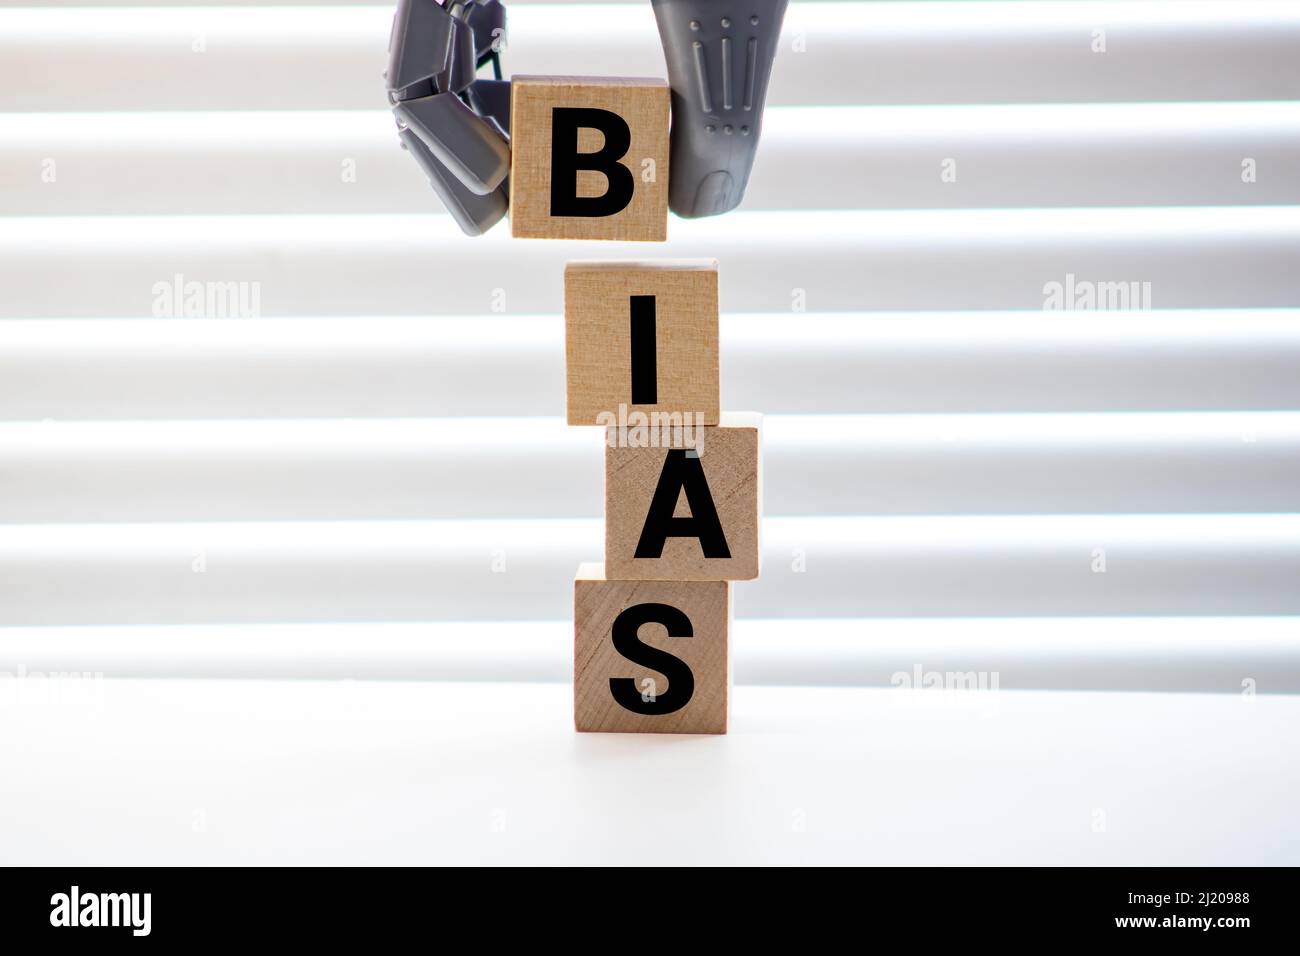 Bias - parola da blocchi di legno con lettere, opinioni personali pregiudizio bias concetto, lettere casuali intorno, sfondo bianco Foto Stock